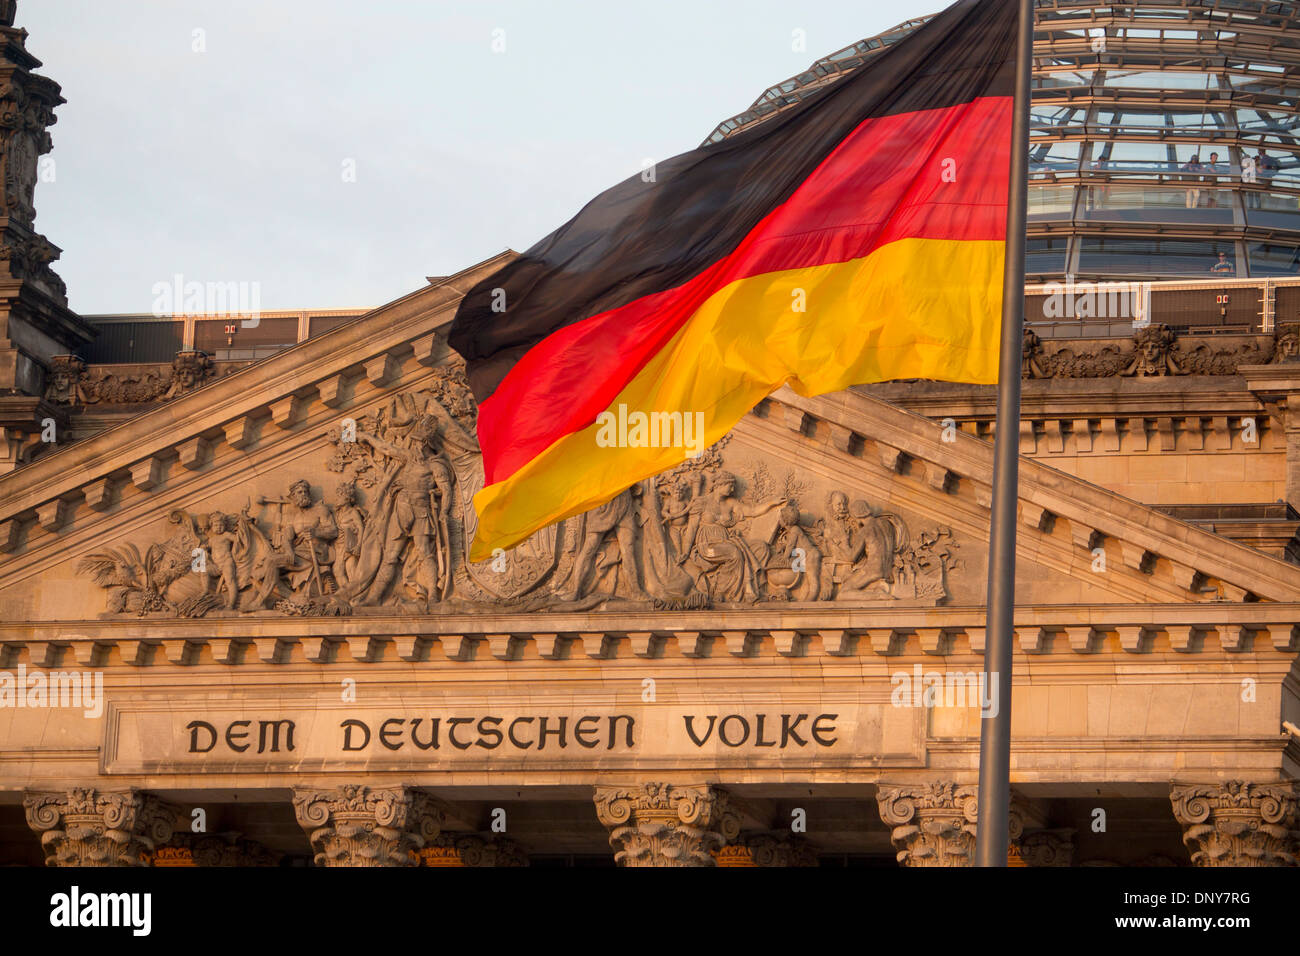 Reichstag Deutsche Bundestag front of building with 'Dem Deutschen Volke' inscription Berlin Germany Stock Photo